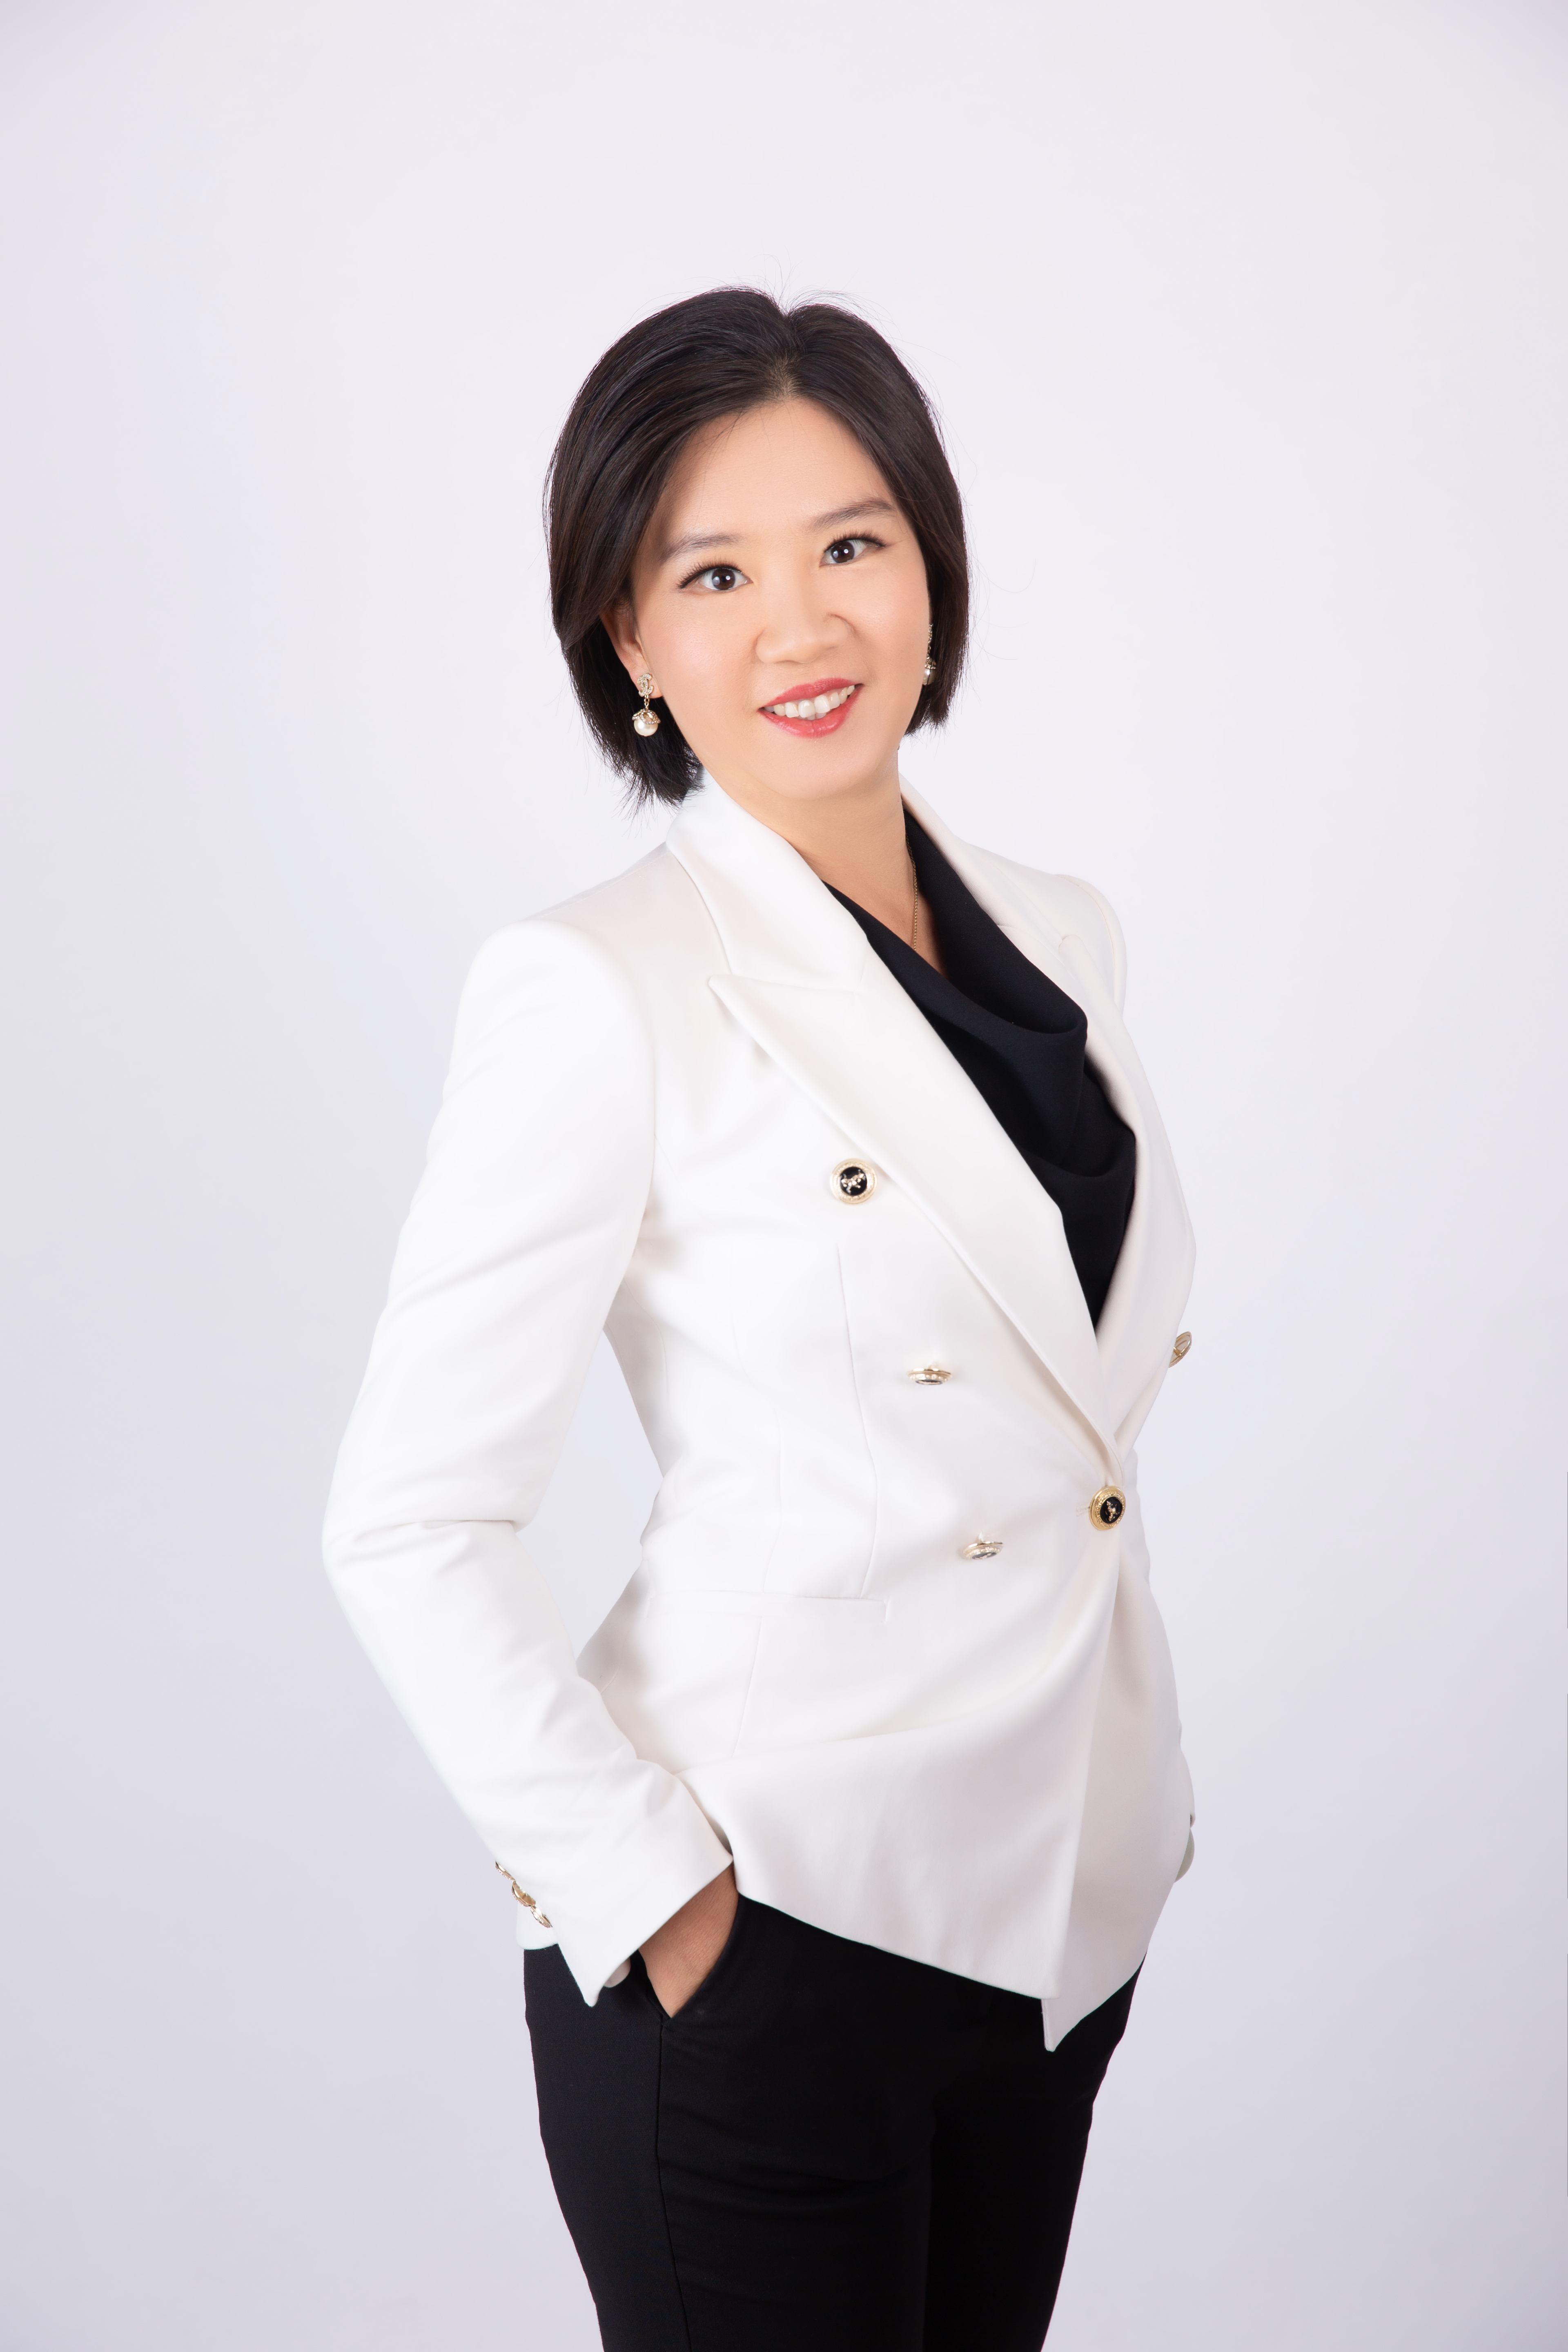 Minrong Lan Real Estate Agent